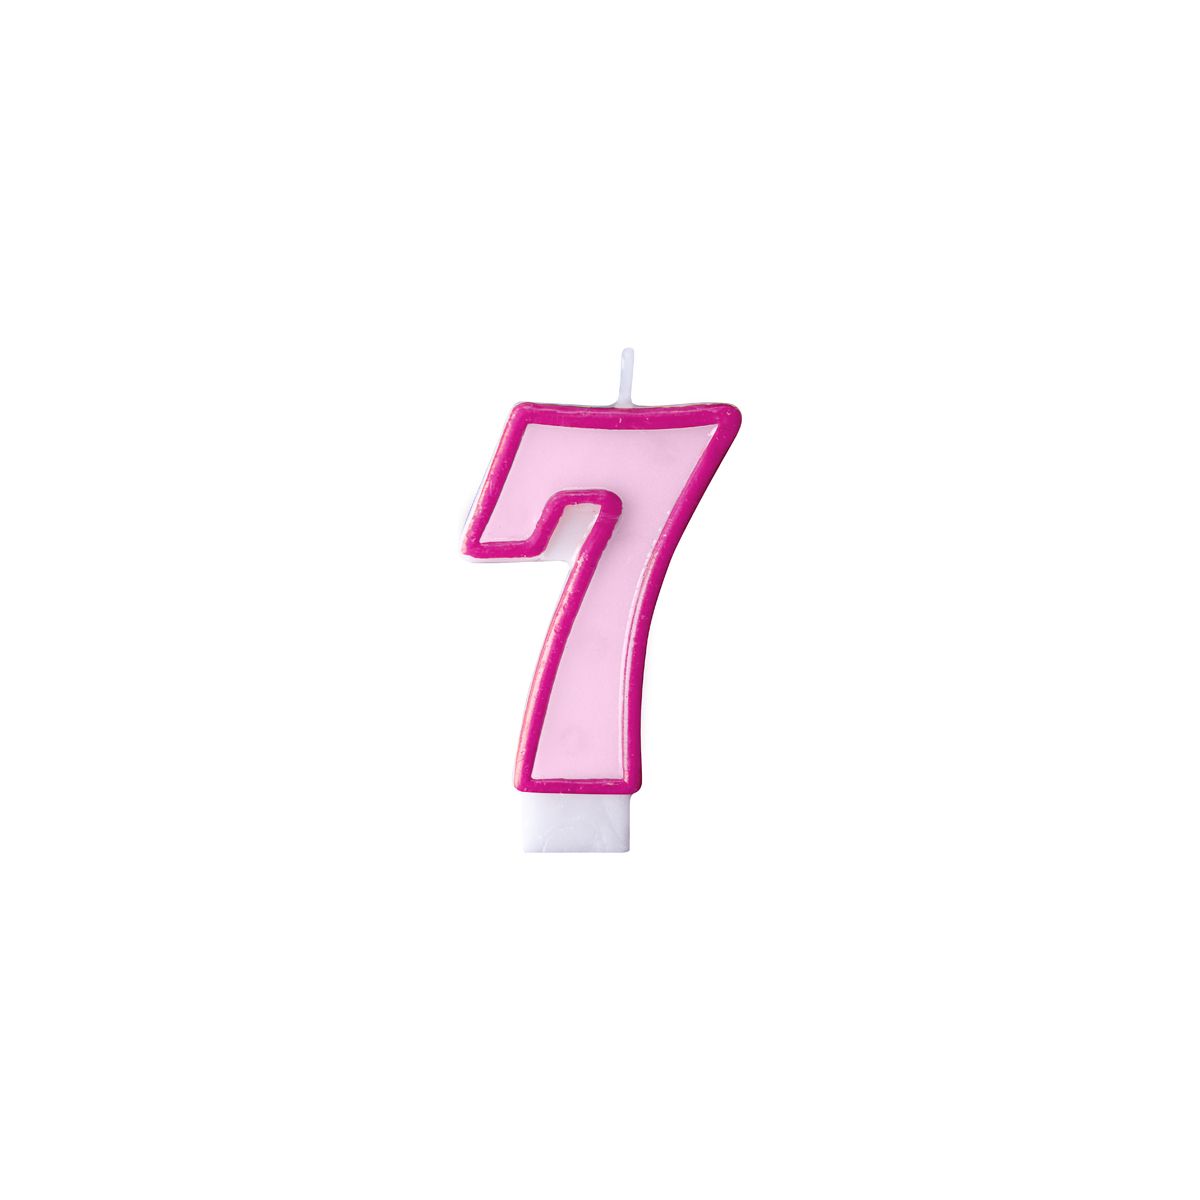 Świeczka urodzinowa Cyferka 7 w kolorze różowym 7 centymetrów Partydeco (SCU1-7-006)